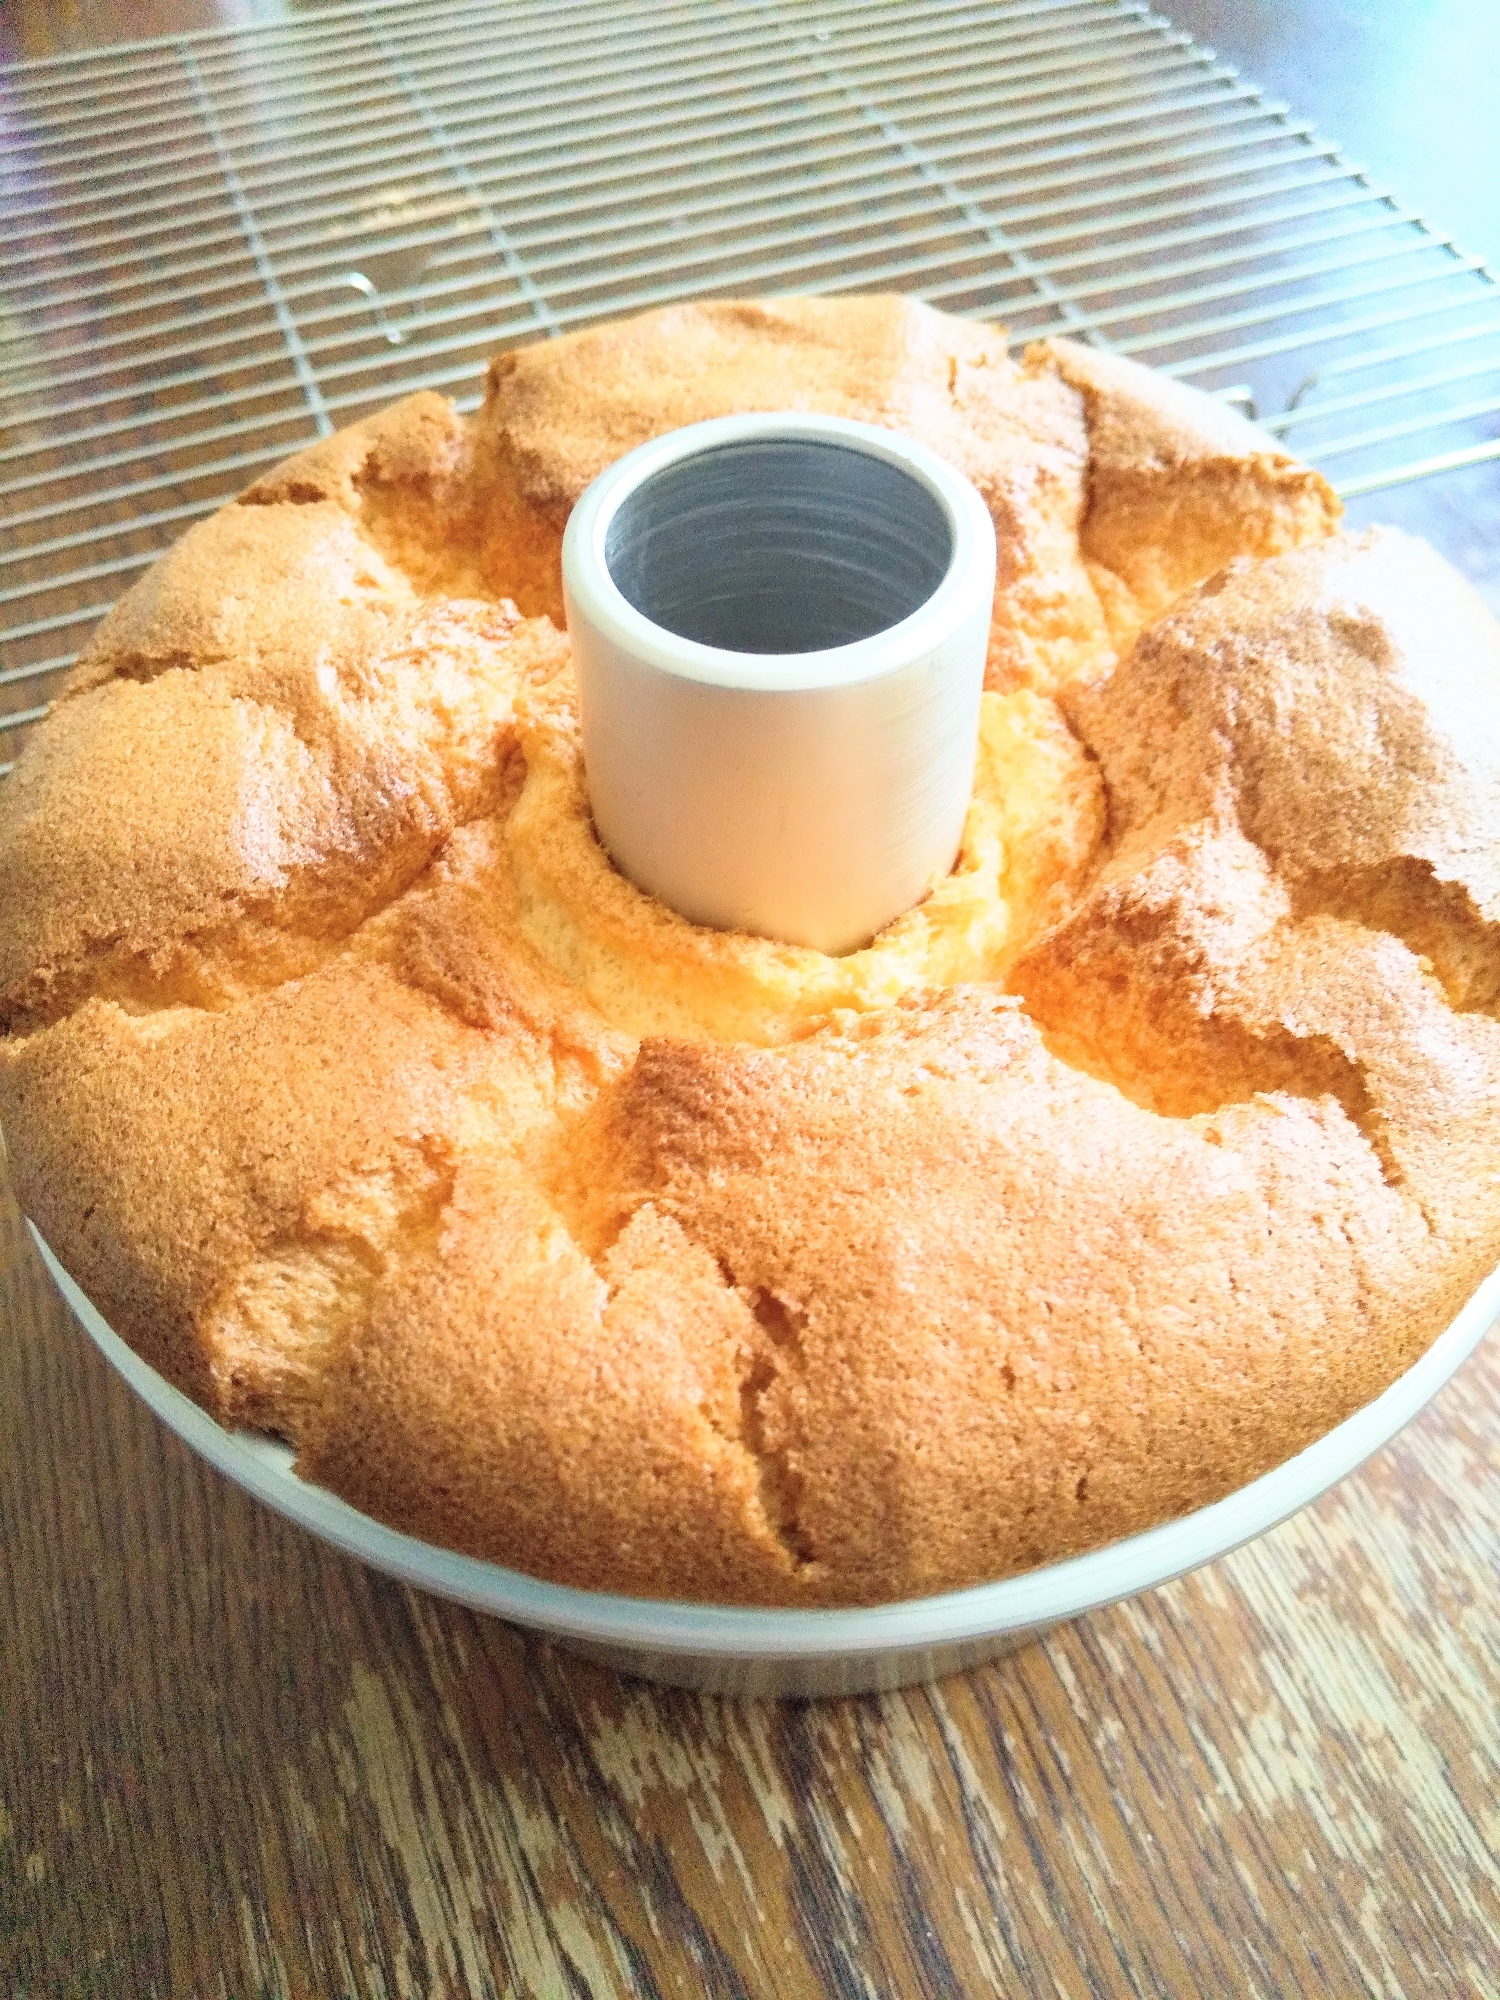 オレンジシフォンケーキ 17cm型の分量 レシピ 作り方 By おだマキ ショコラスキー 楽天レシピ